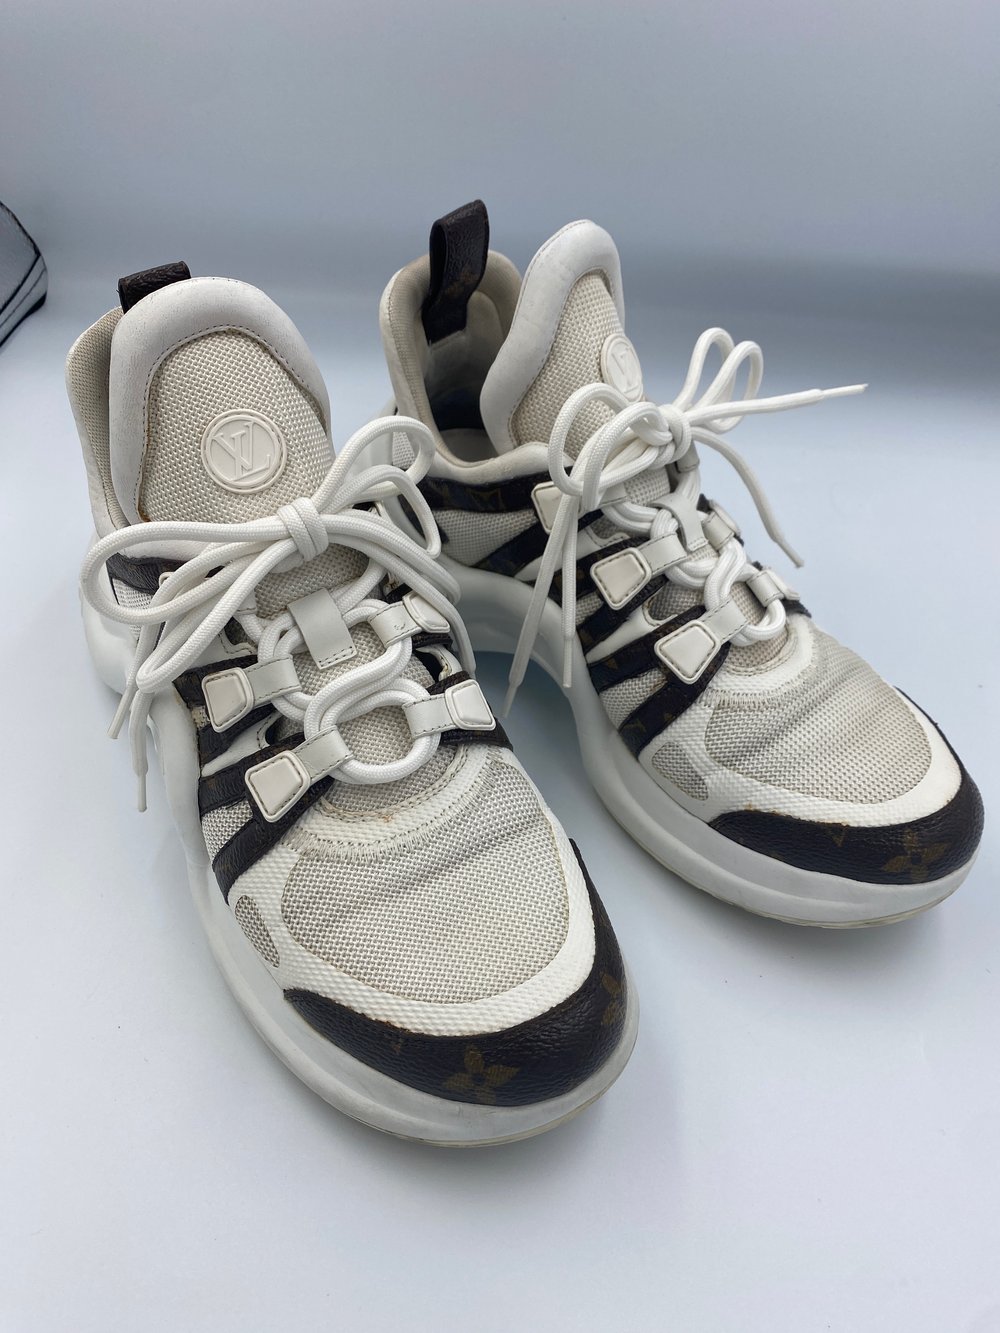 Louis Vuitton Archlight Sneaker White Mono